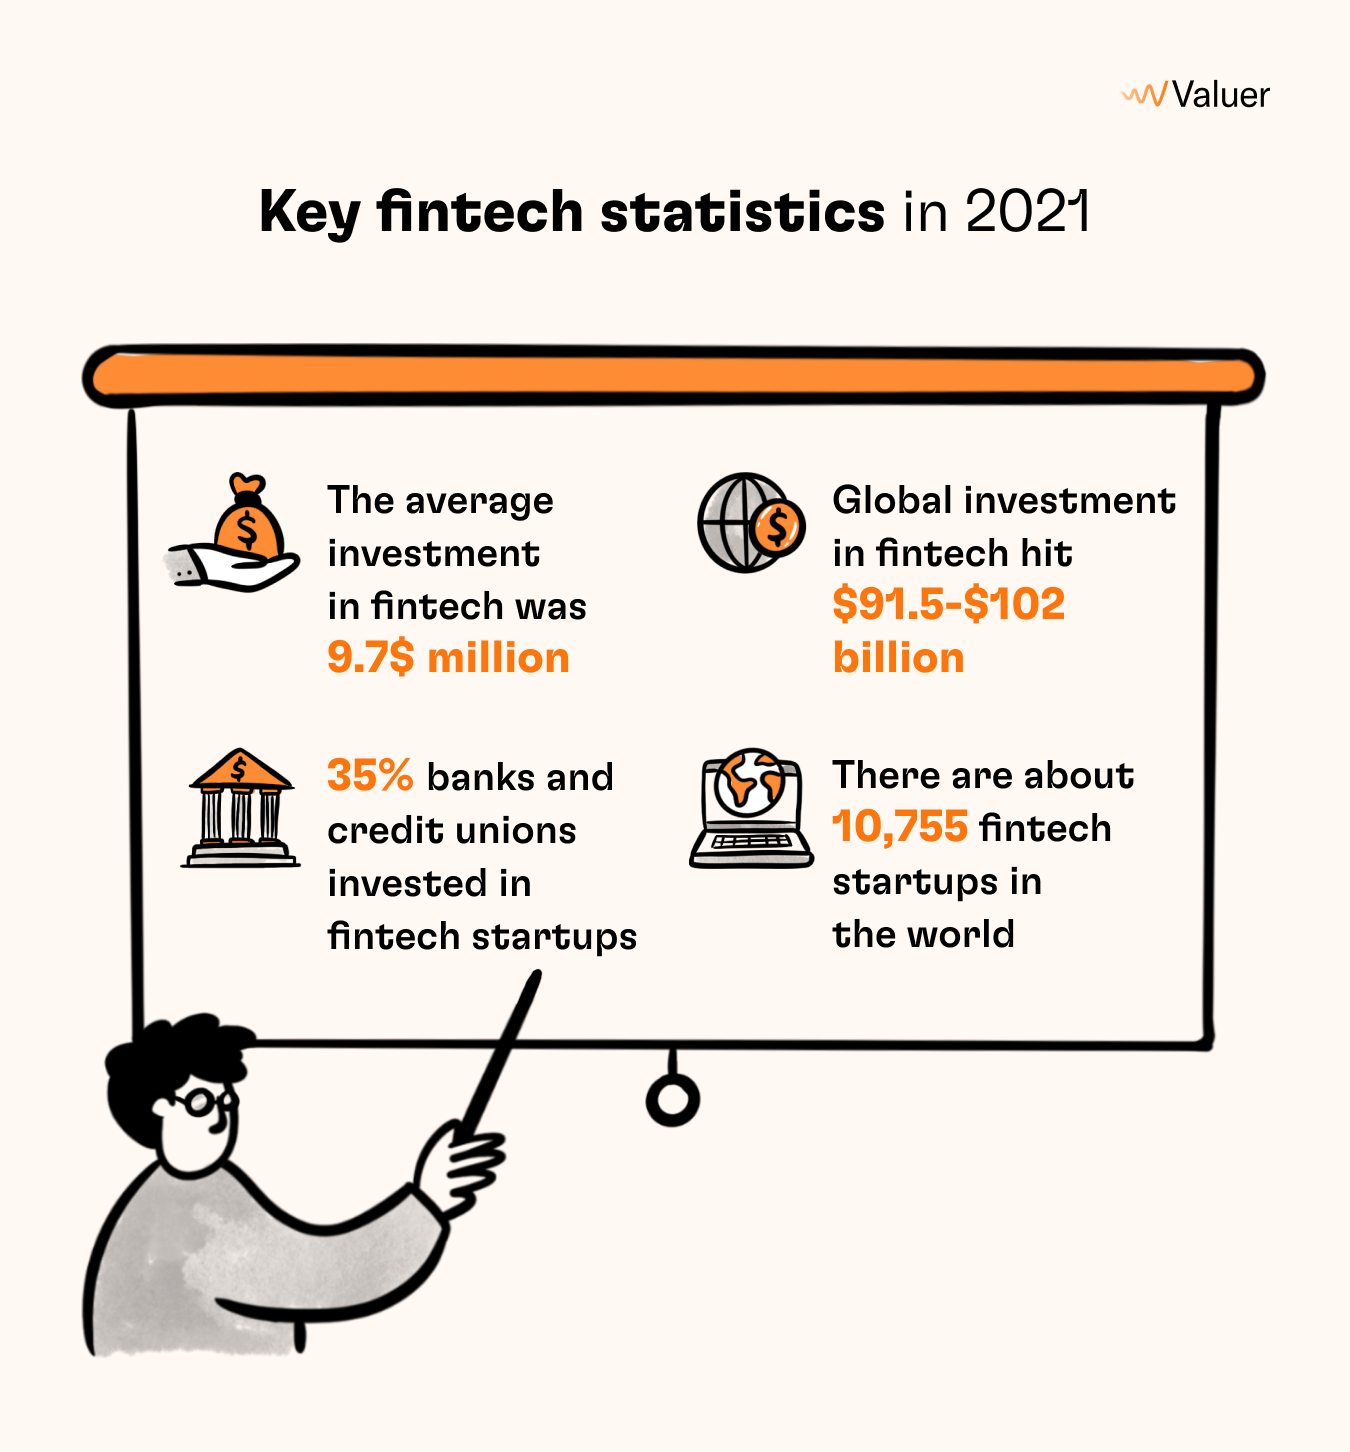 Key fintech statistics in 2021